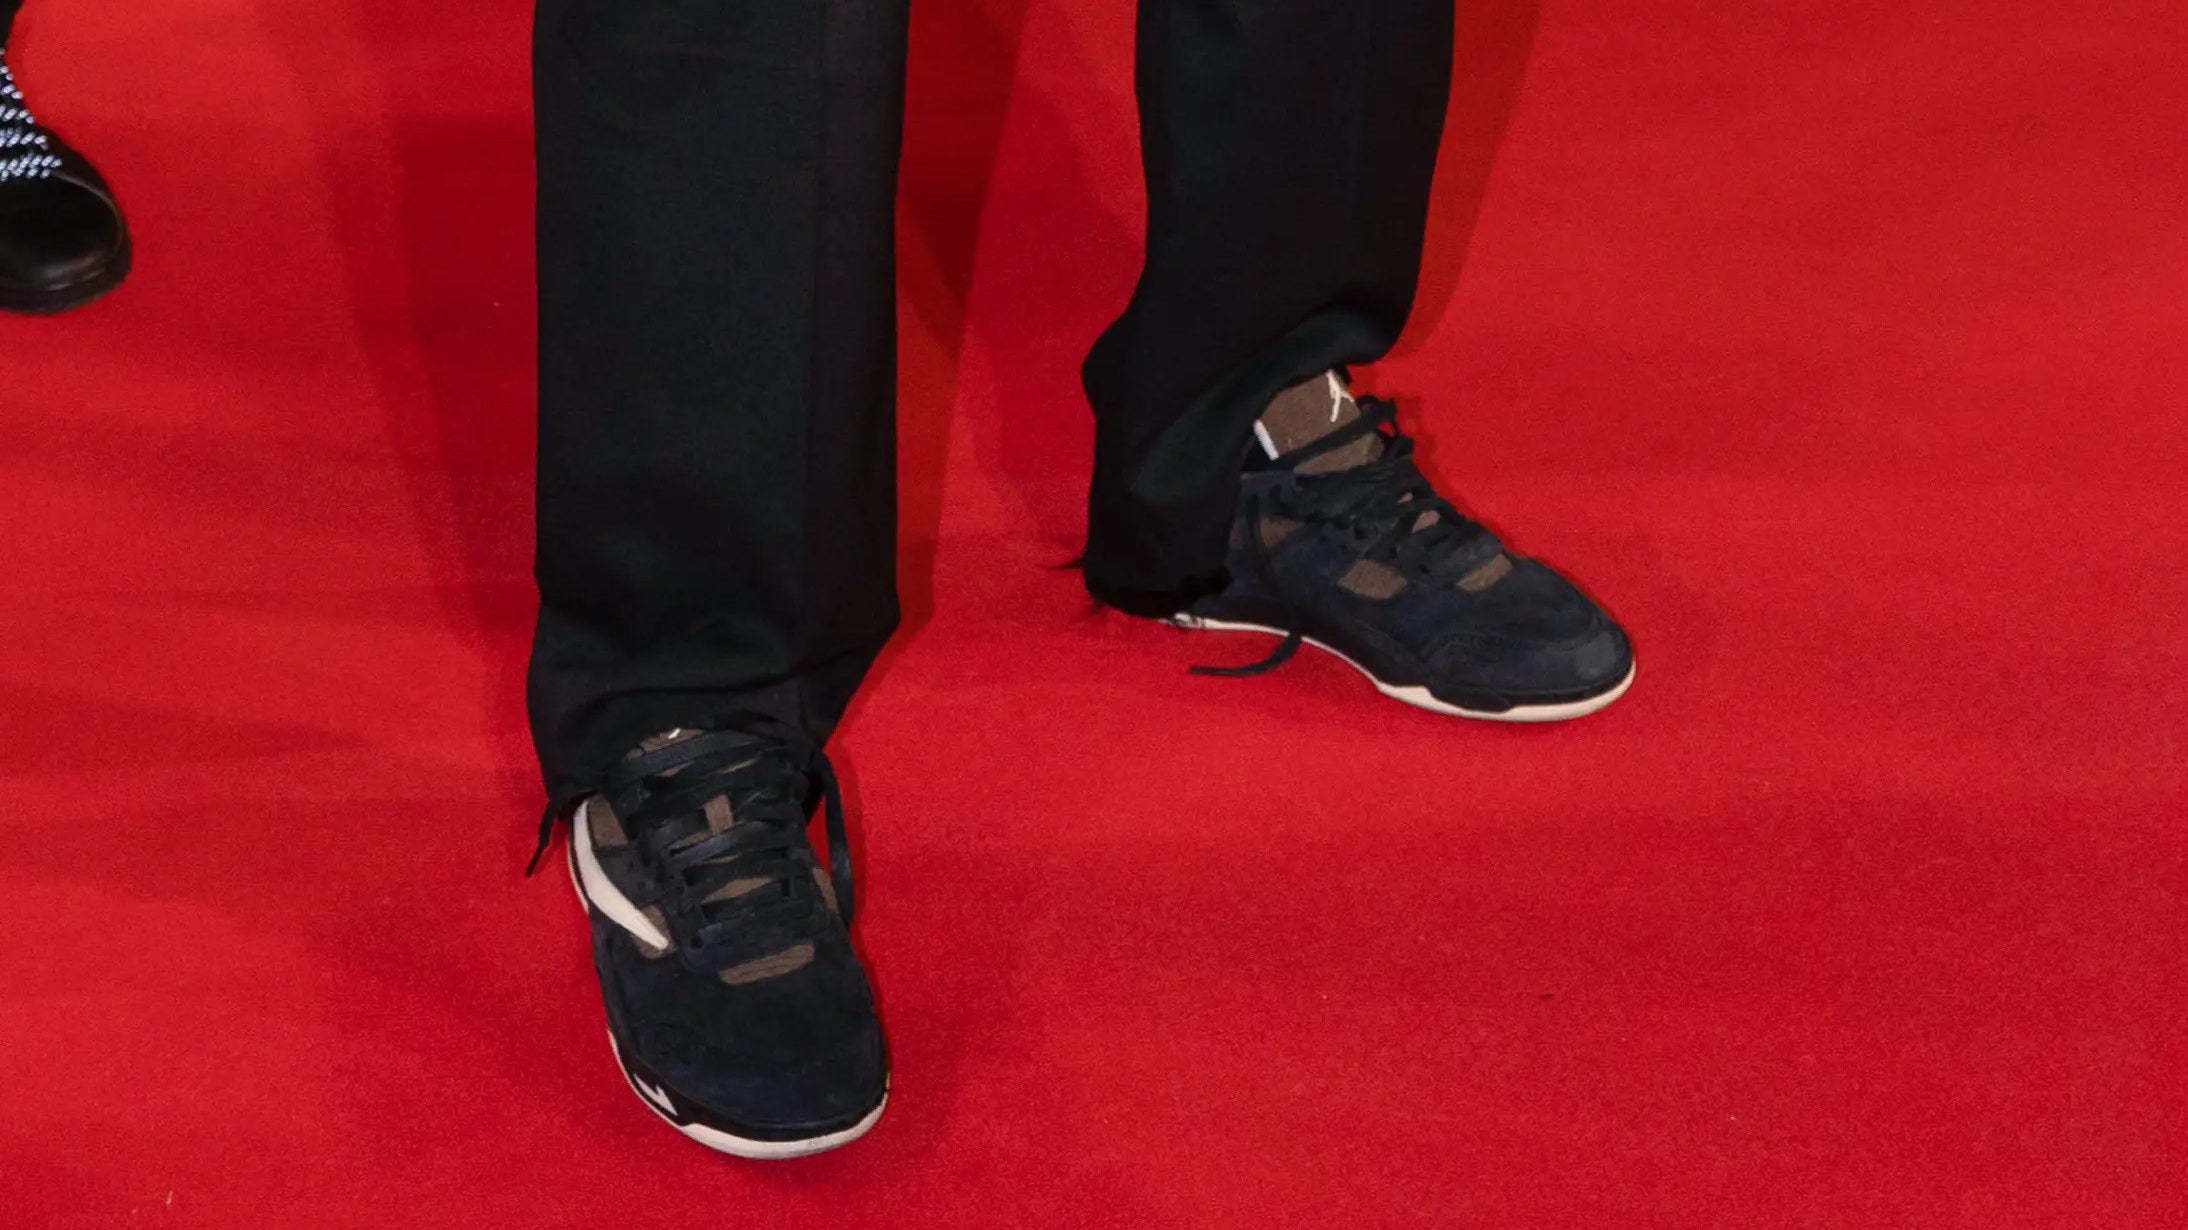 Travis Scott Sneakers On Feet: Styling The Travis Scott Shoes